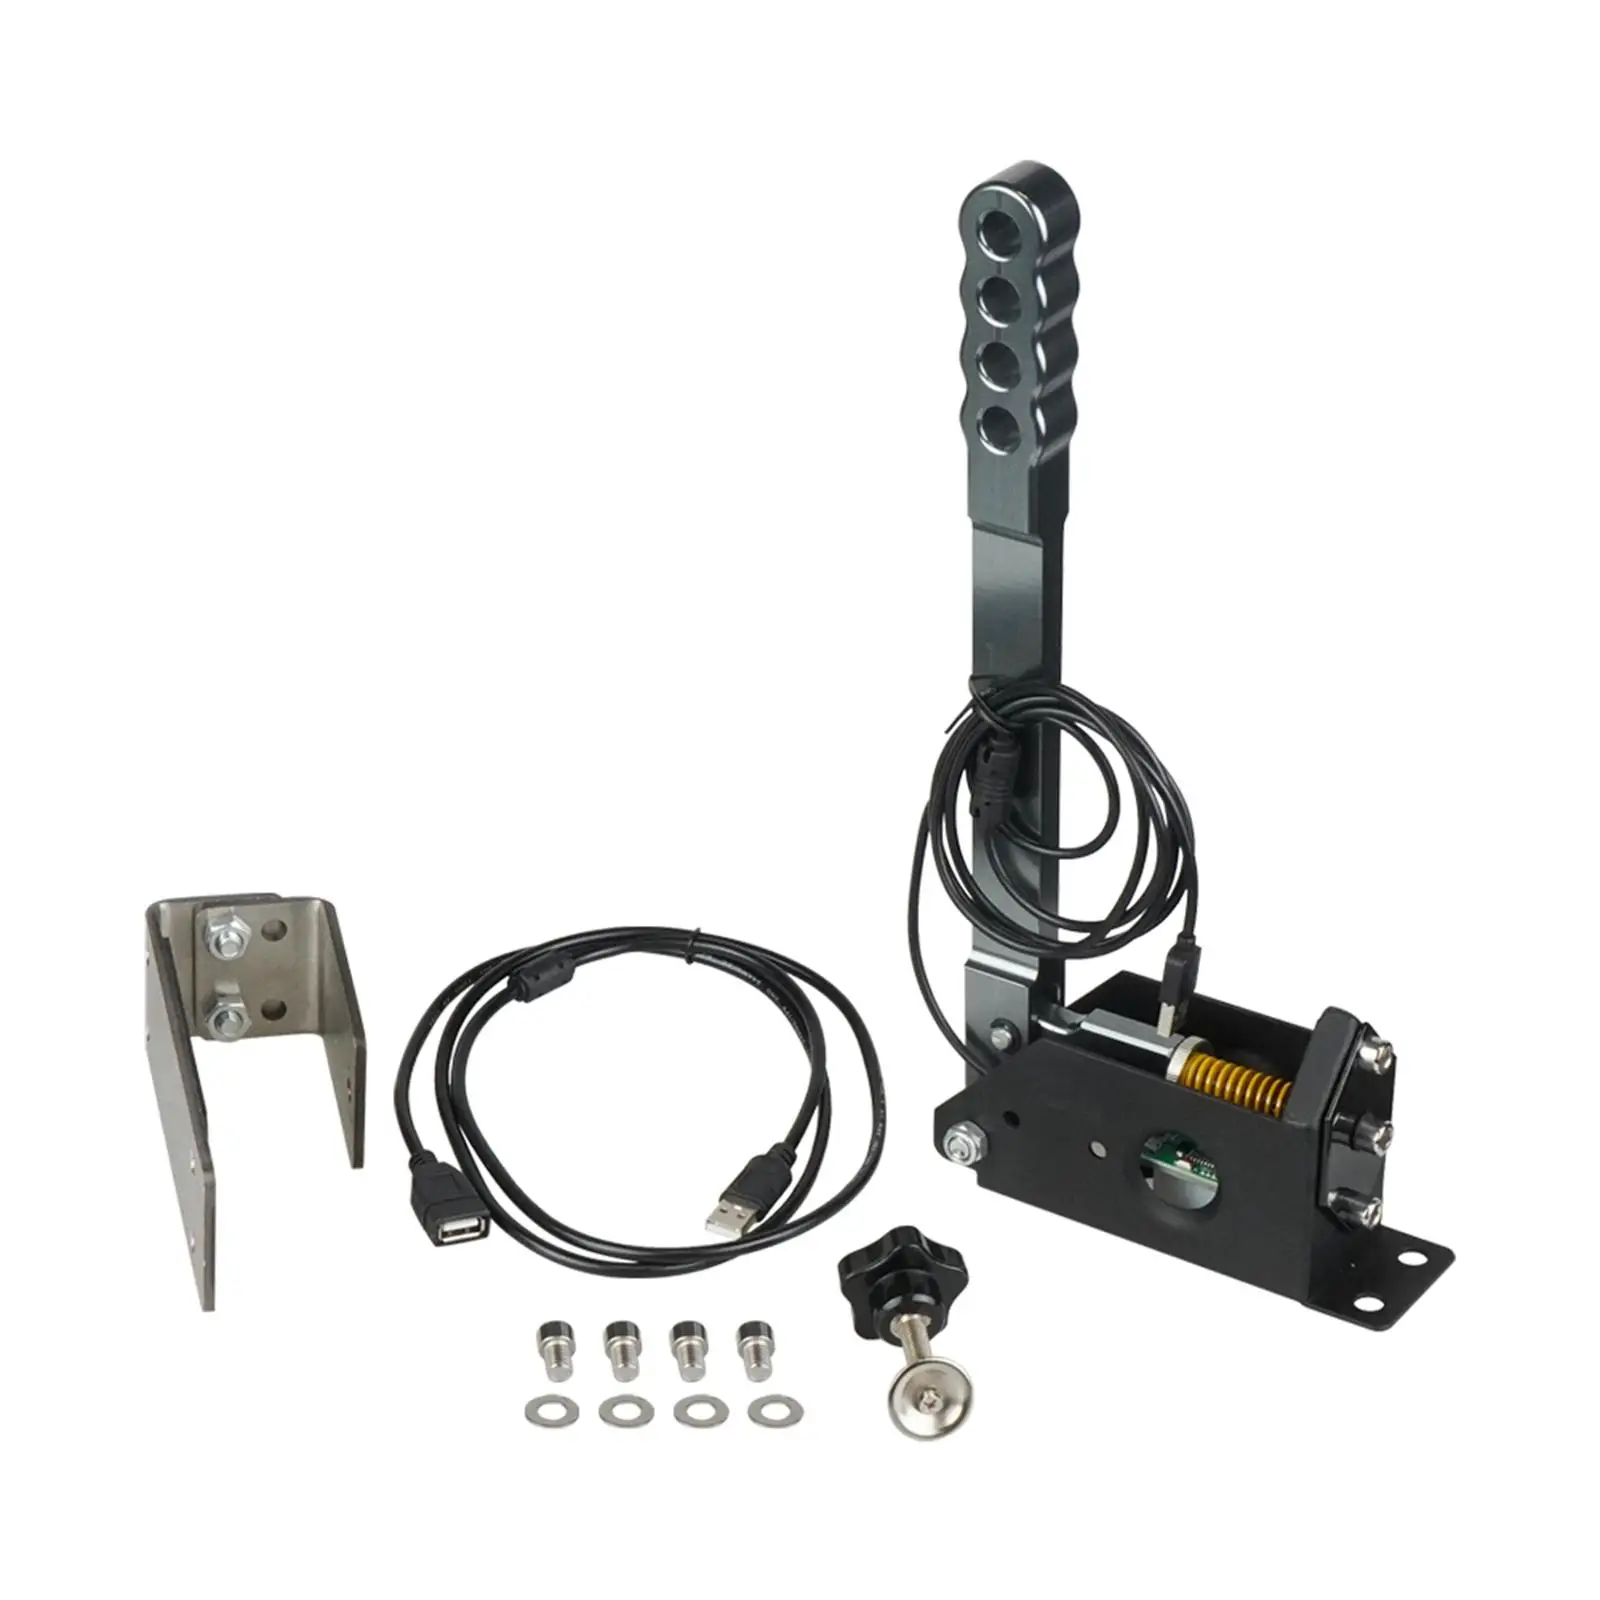 Brake System Handbrake Plug and Play Hall Sensor Easy to Install Handbrake Clamp for Logitech G29 Racing Games G27 G25 PC